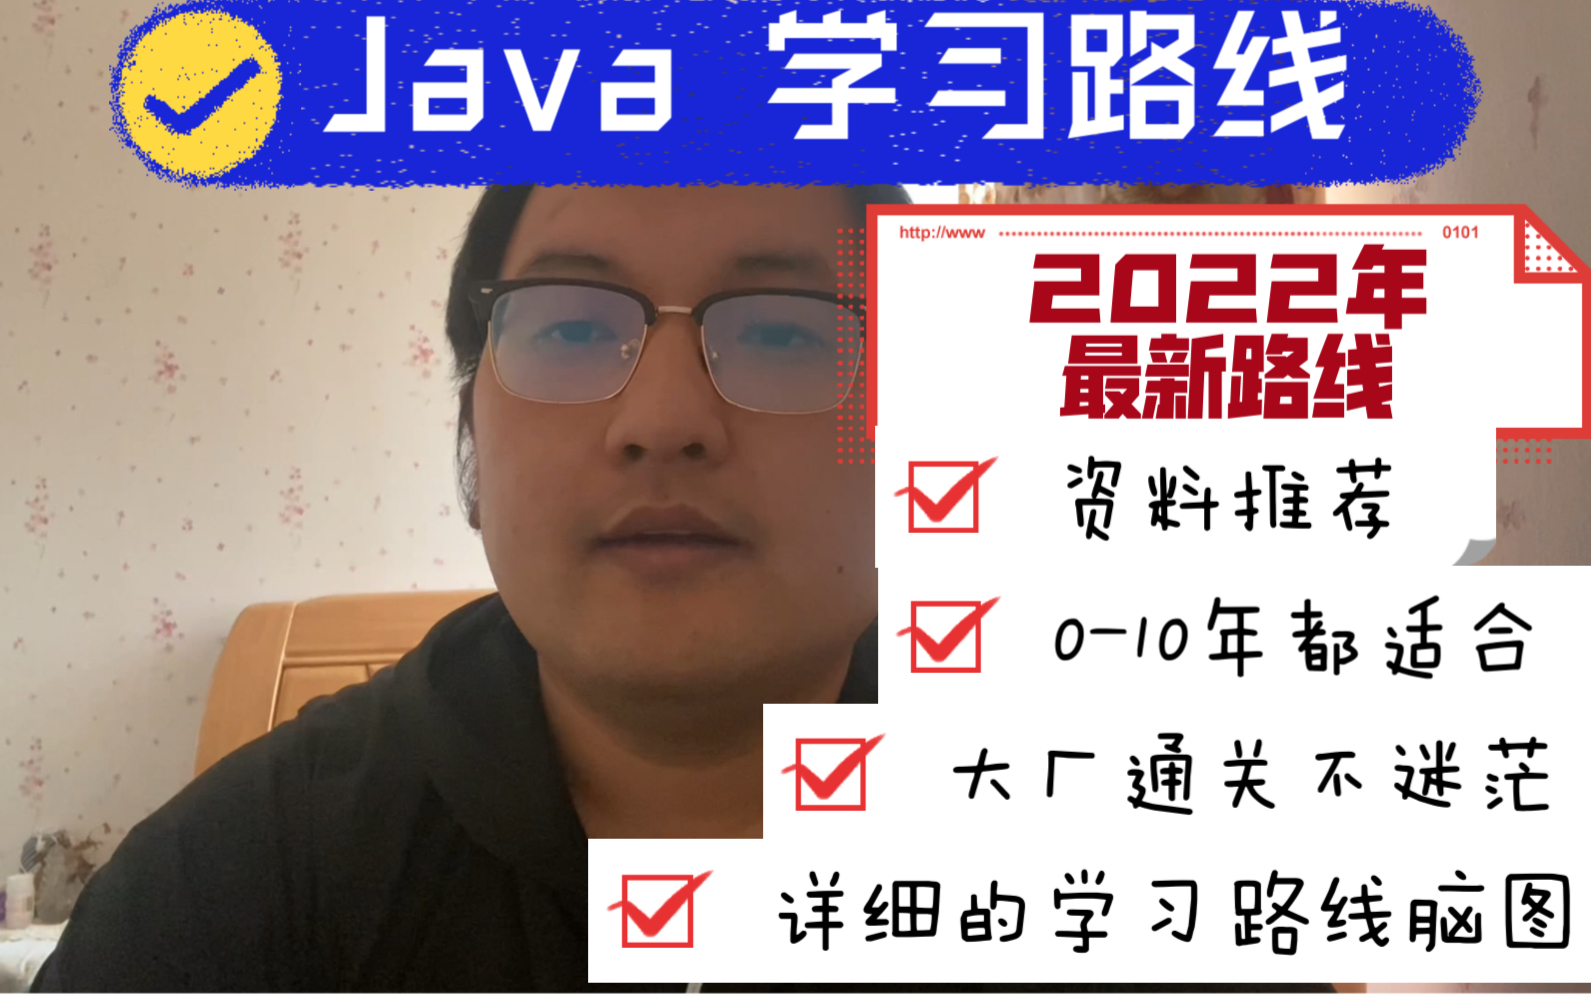 2022最新Java学习路线，适合0-10年程序员。保姆级大厂通关路线指南+学习资料推荐。精简，细致，贴心。